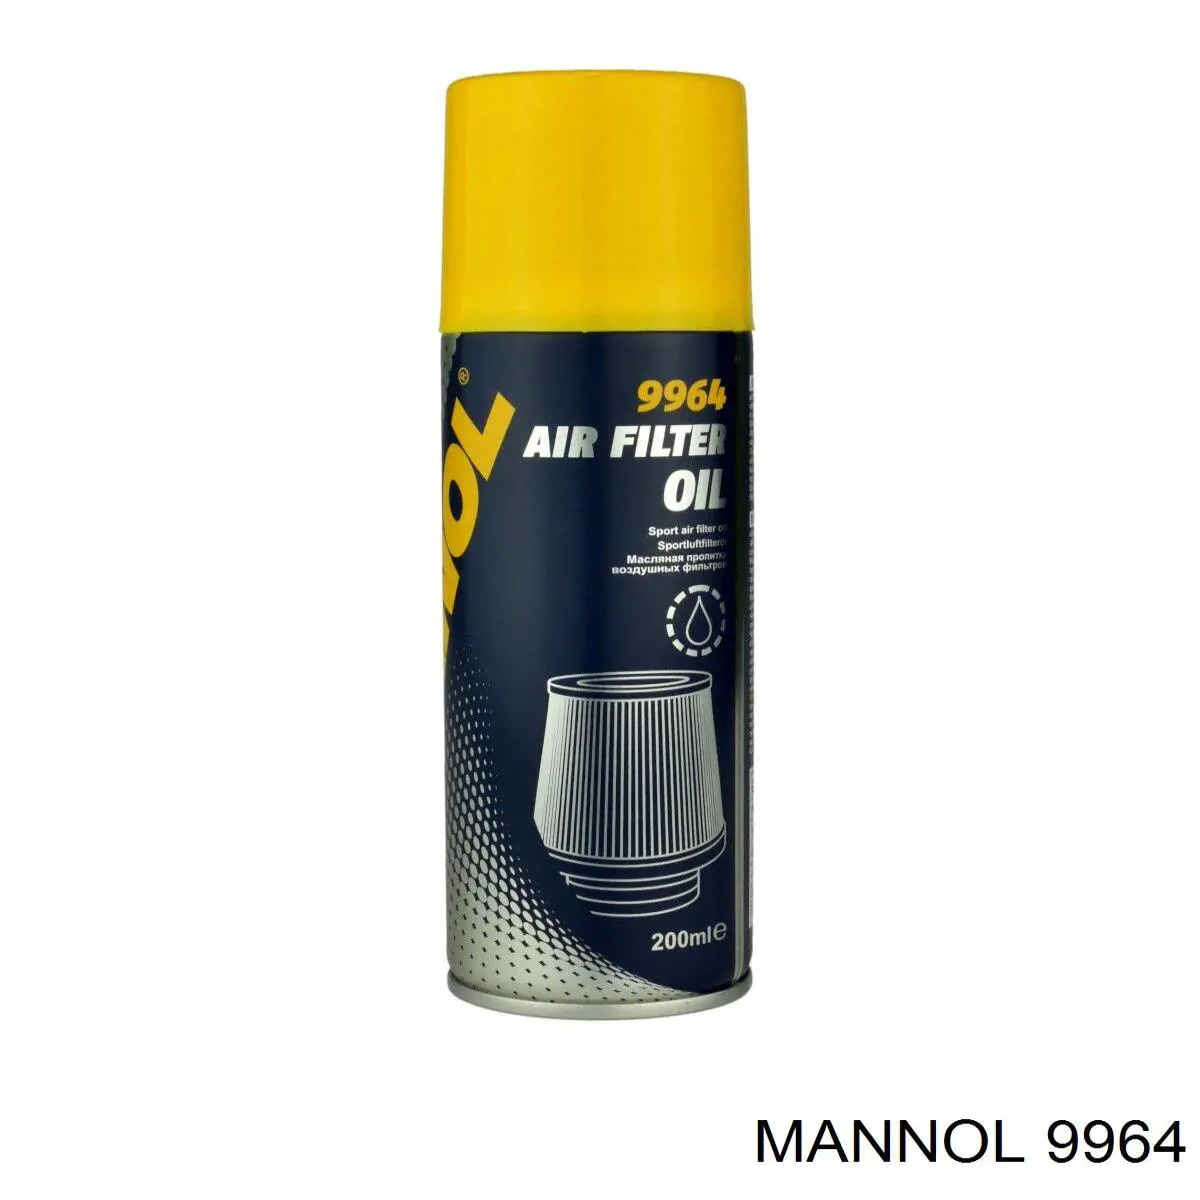 9964 Mannol масло для пропитки воздушных фильтров